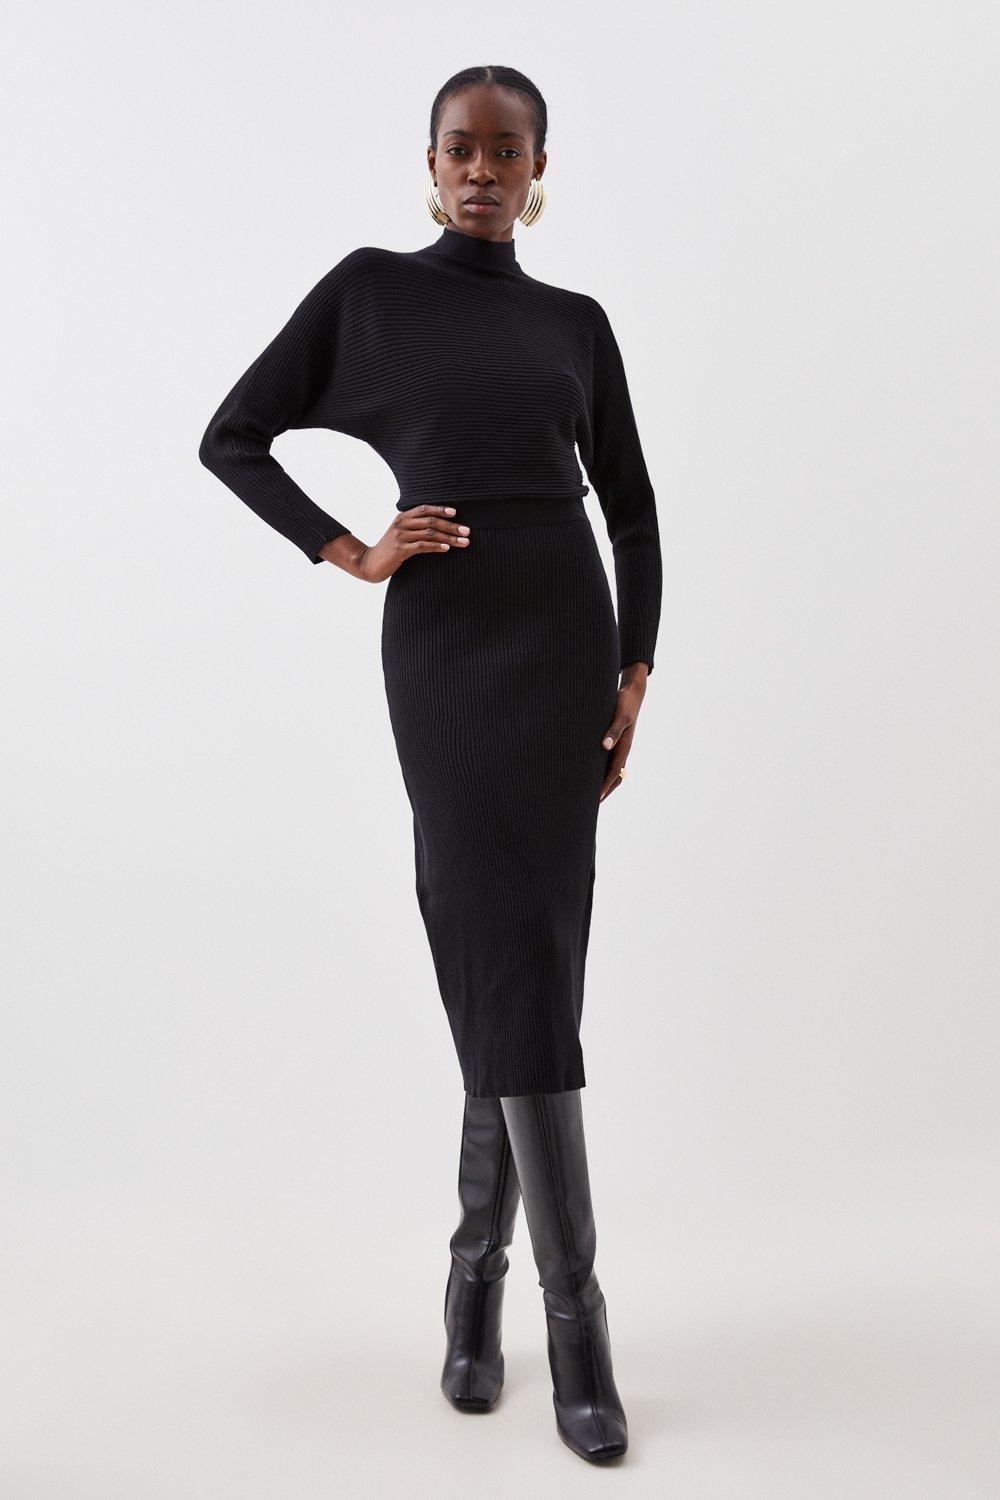 Women's Black Dresses | Karen Millen